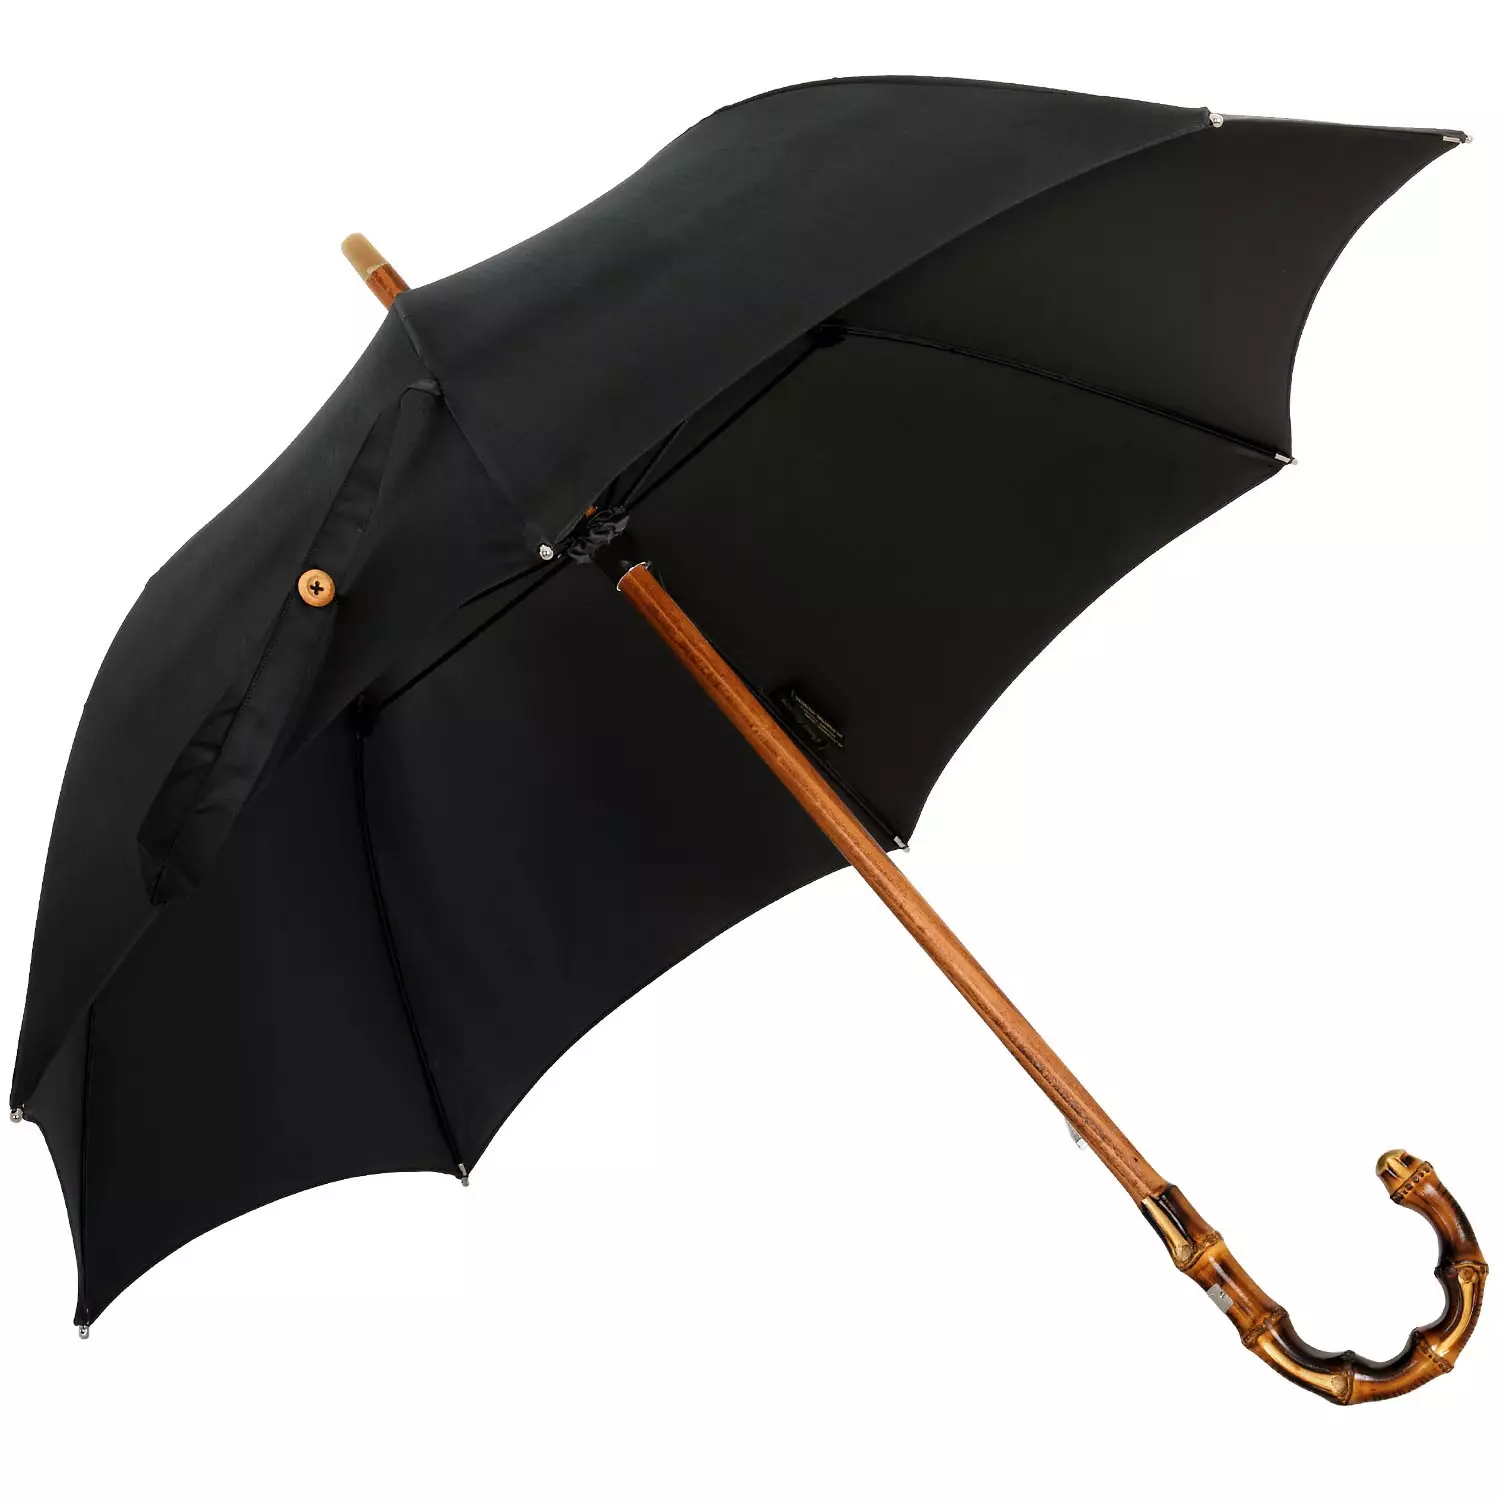 Umbrella negra (47 fotos): canya de dona 15217_14